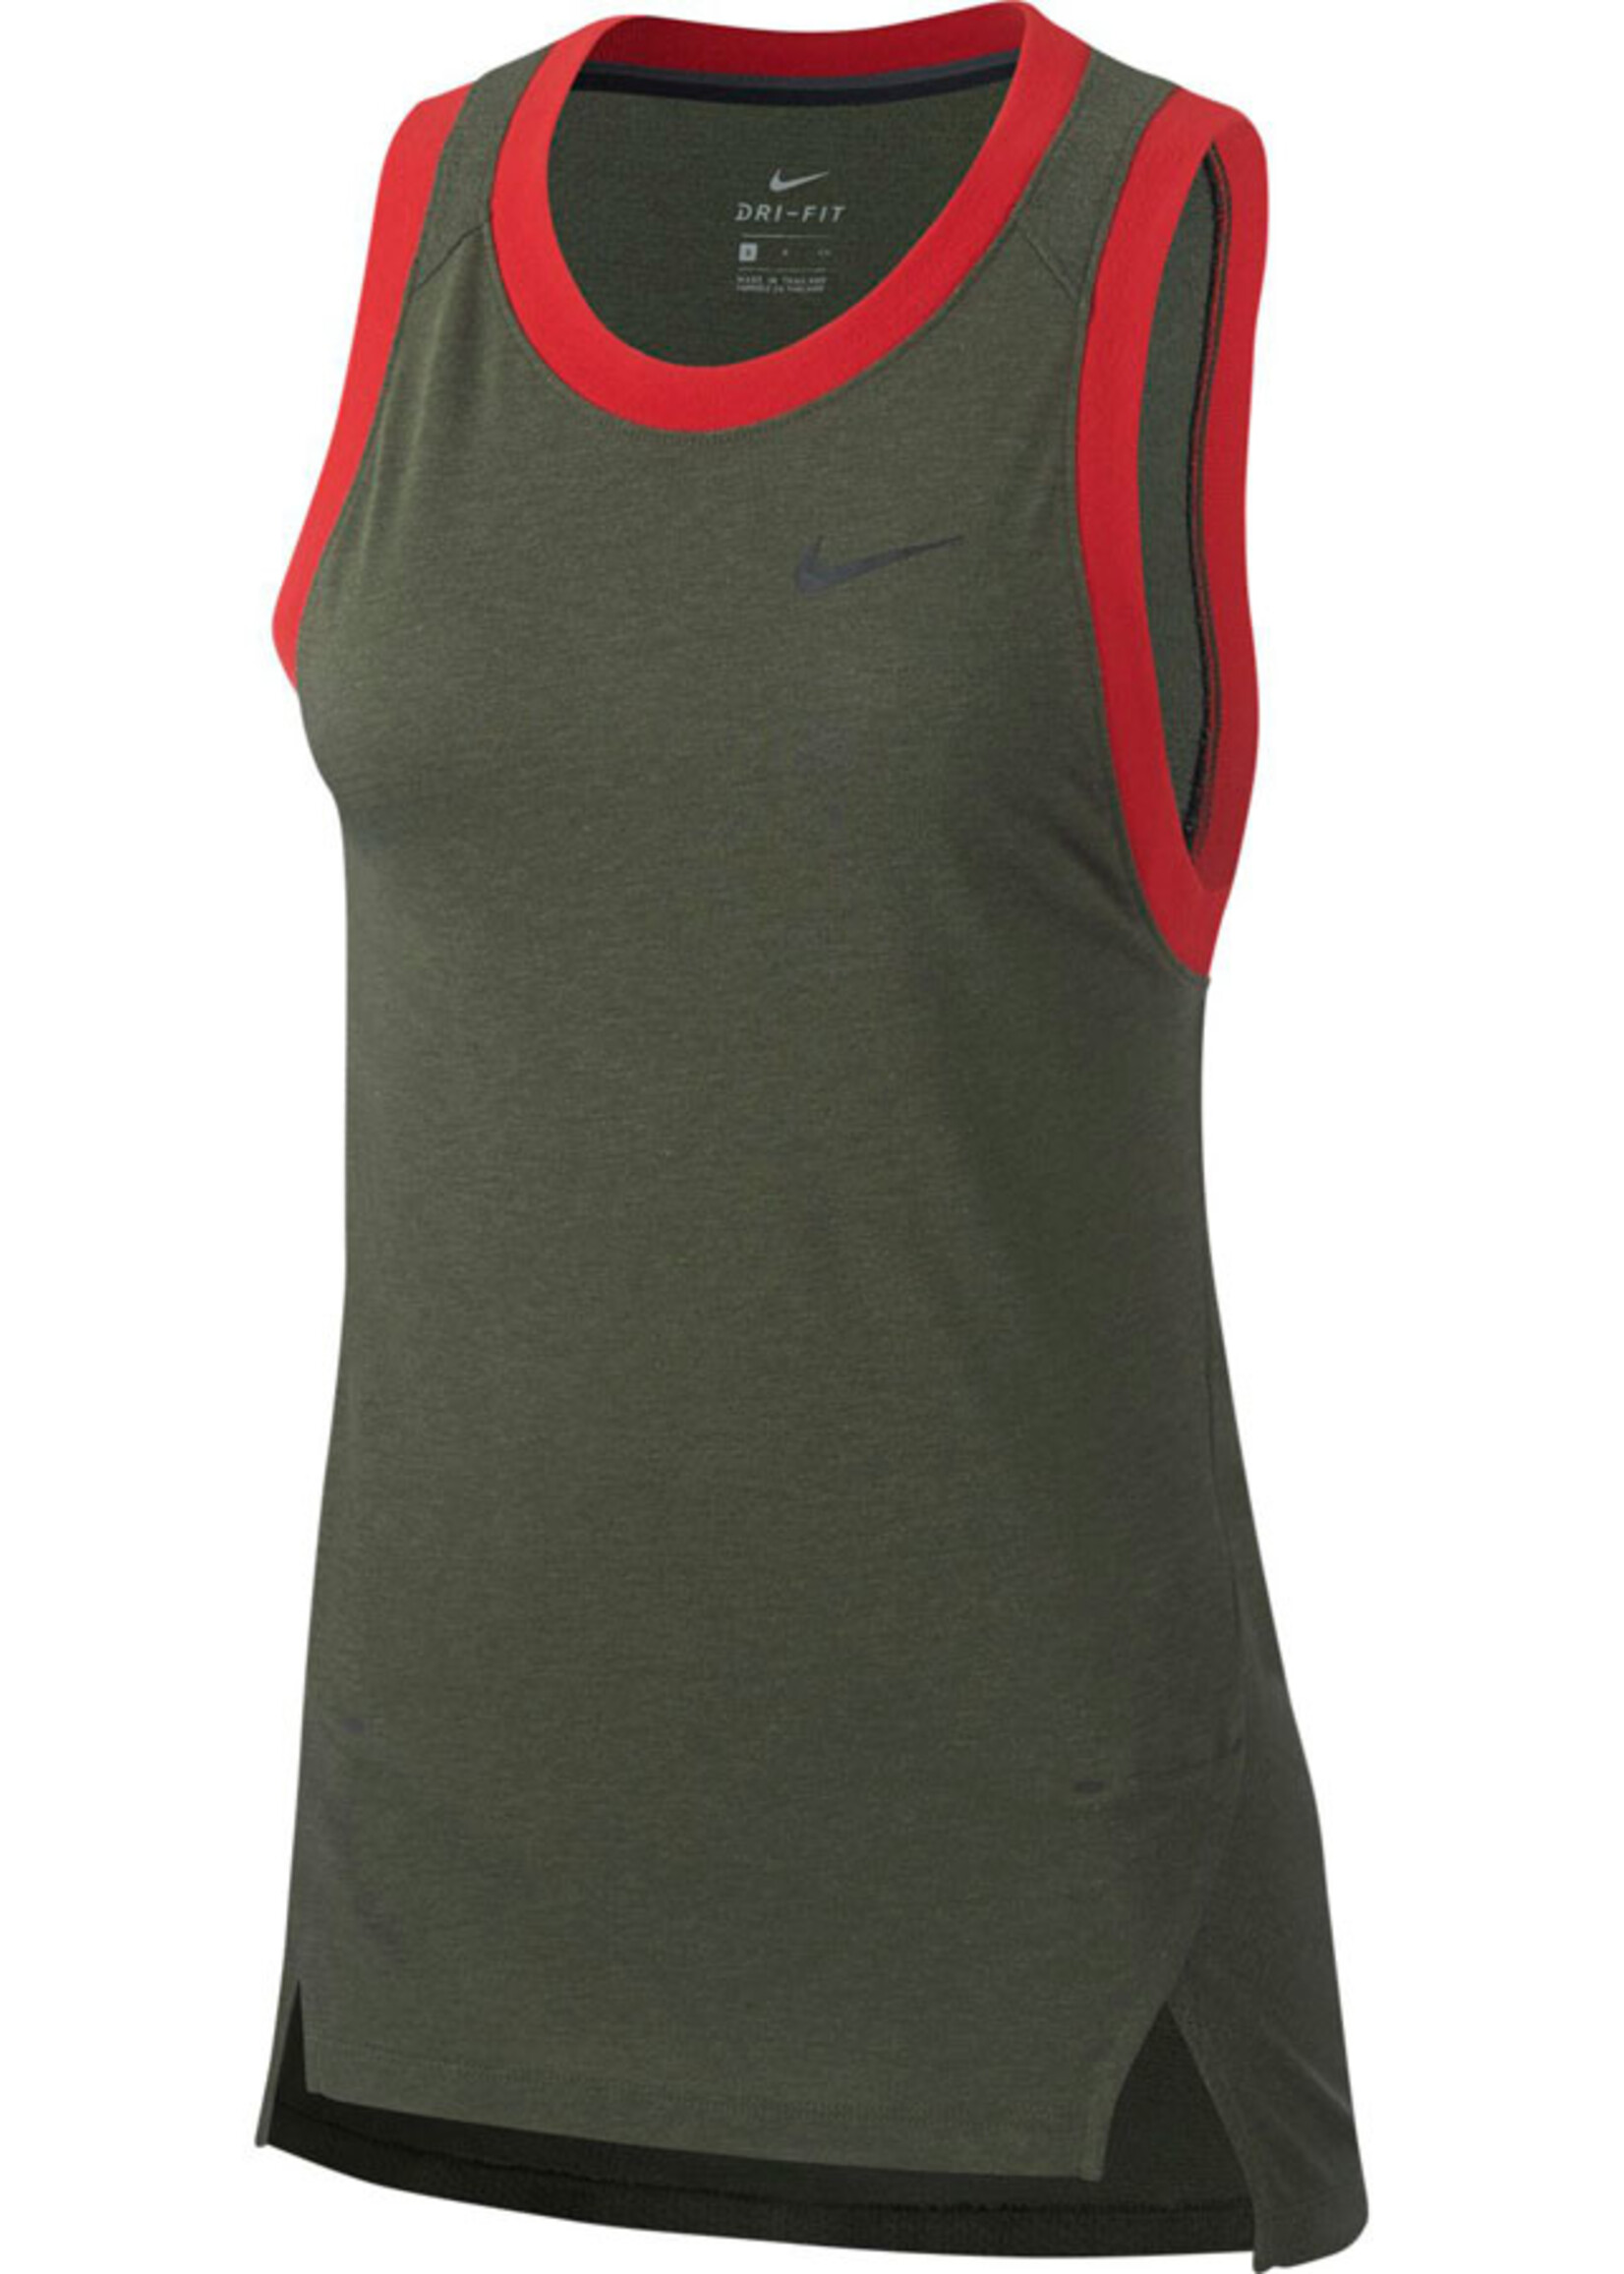 Nike Nike Elite Damen Basketball Tank Top Khaki Dri-Fit